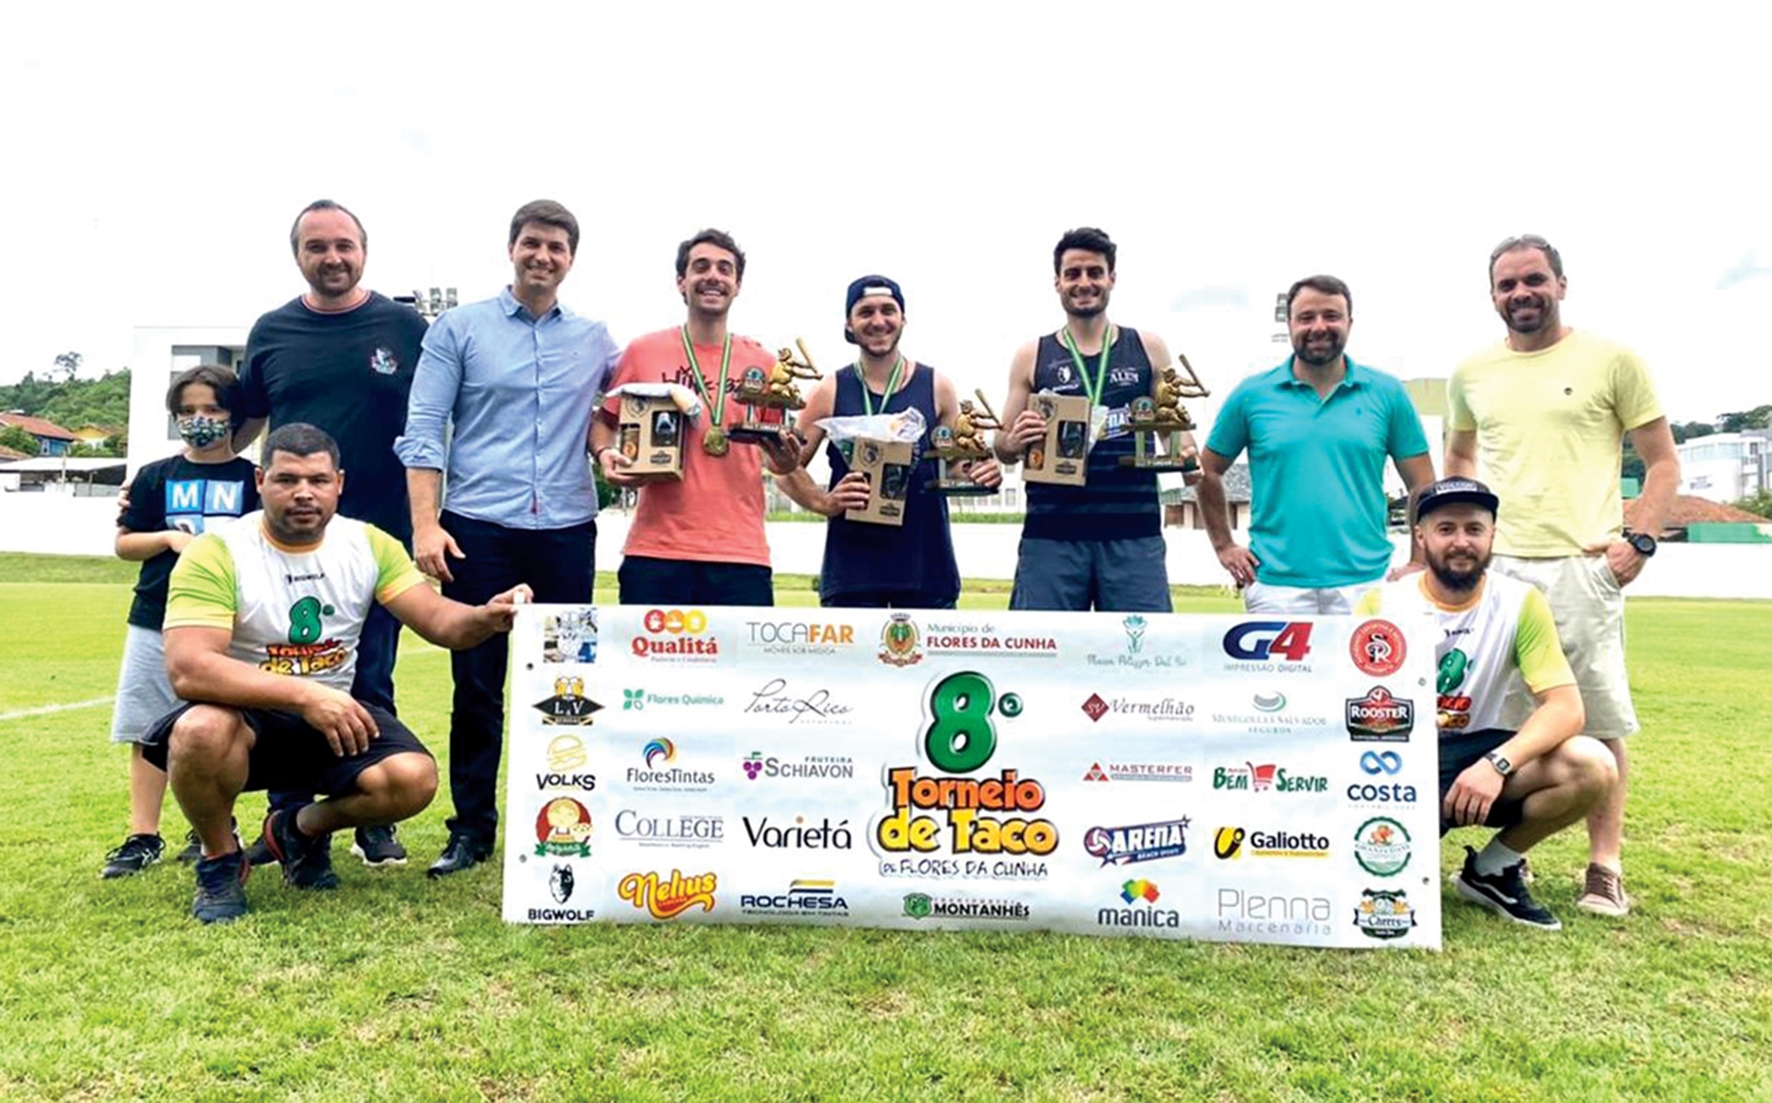 Formada pelos atletas Paulo Dondé, Marcos Mascarello e Ezequiel Tonet, os Barões da Tacadinha venceram ao final por 21x4. - Prefeitura de FC/ Divulgação